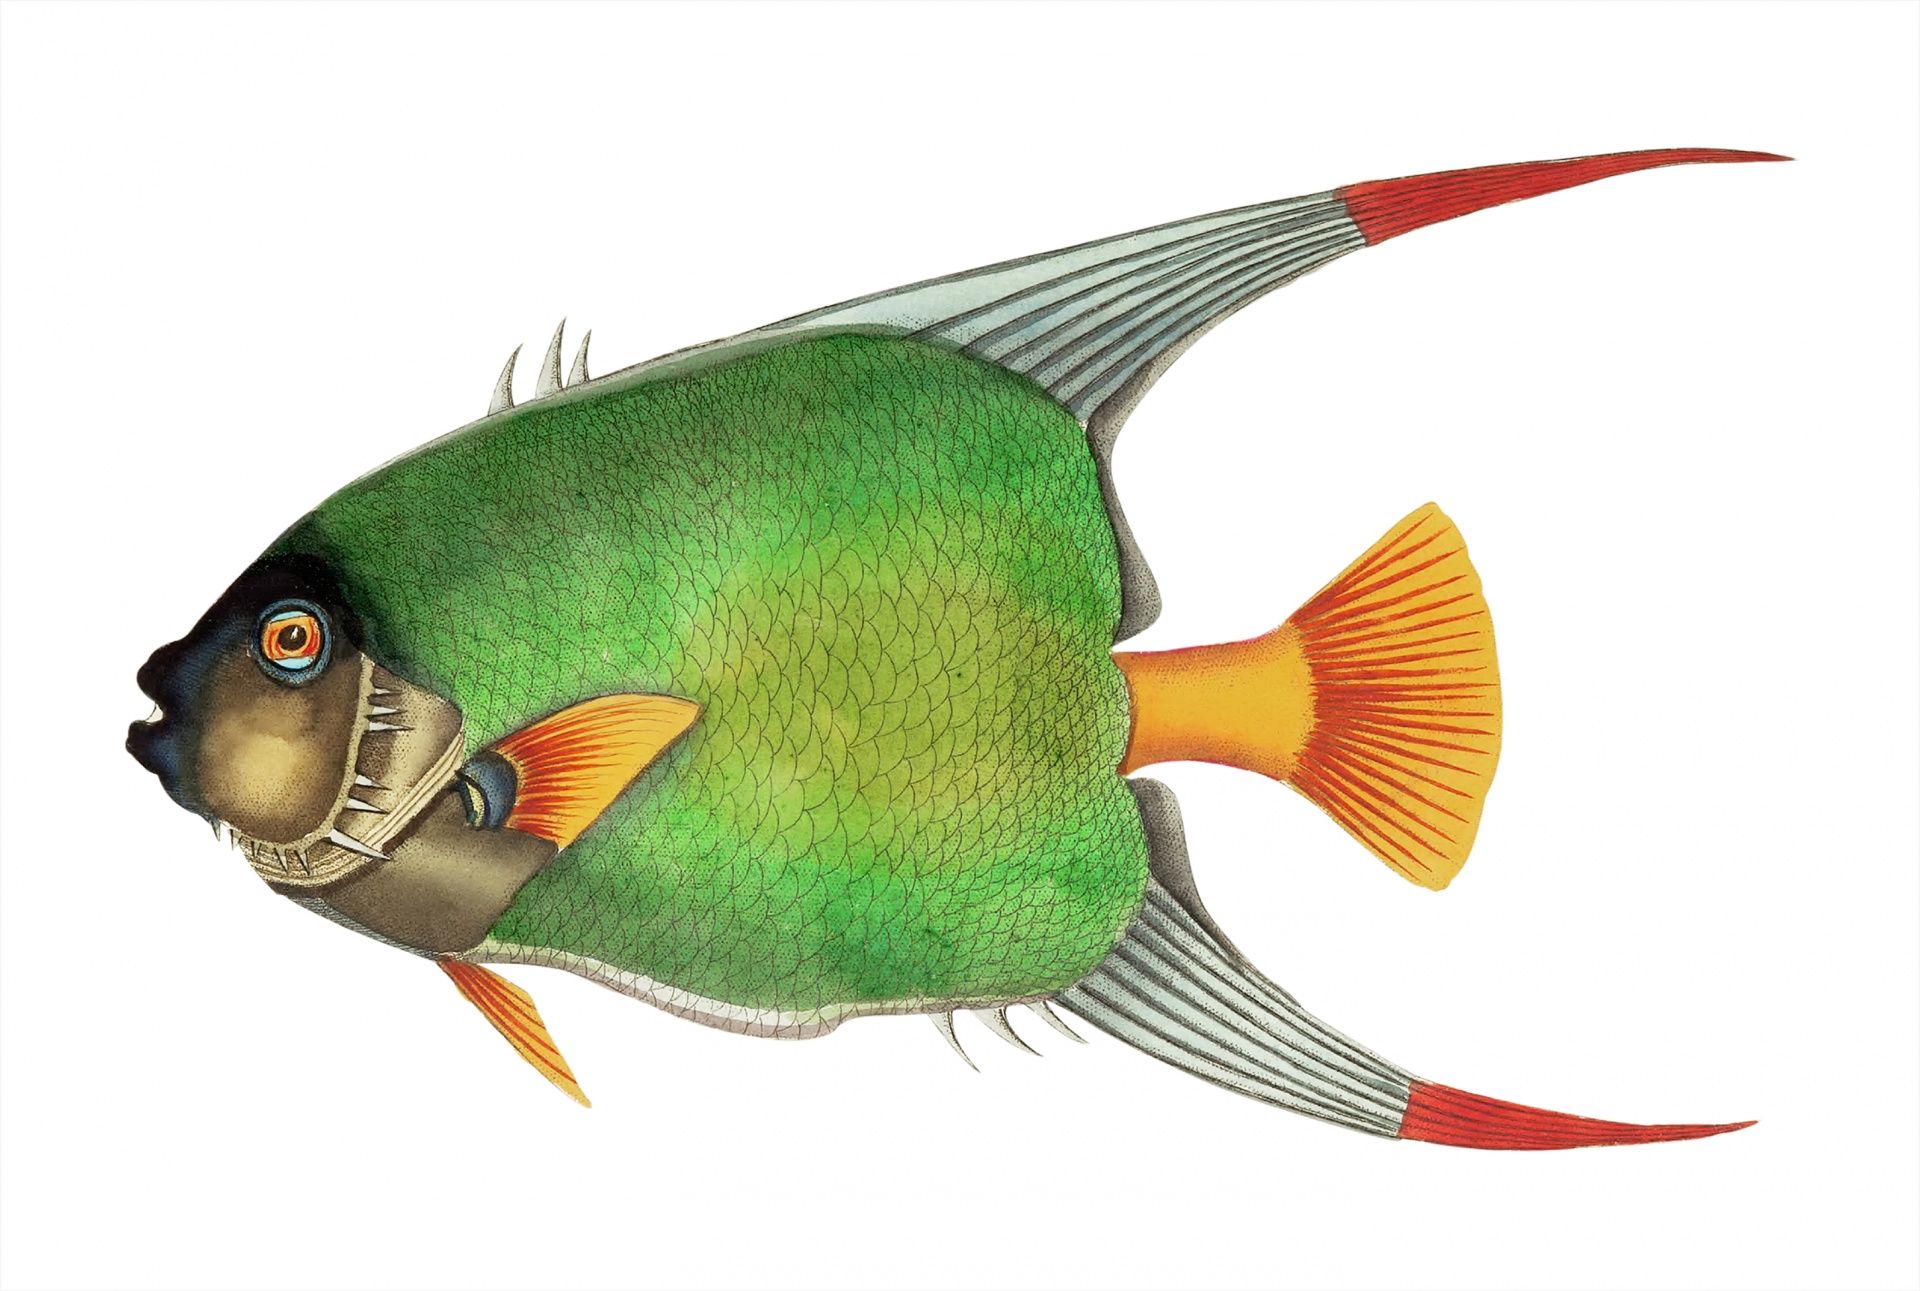 Arte colorido vintage de pescado